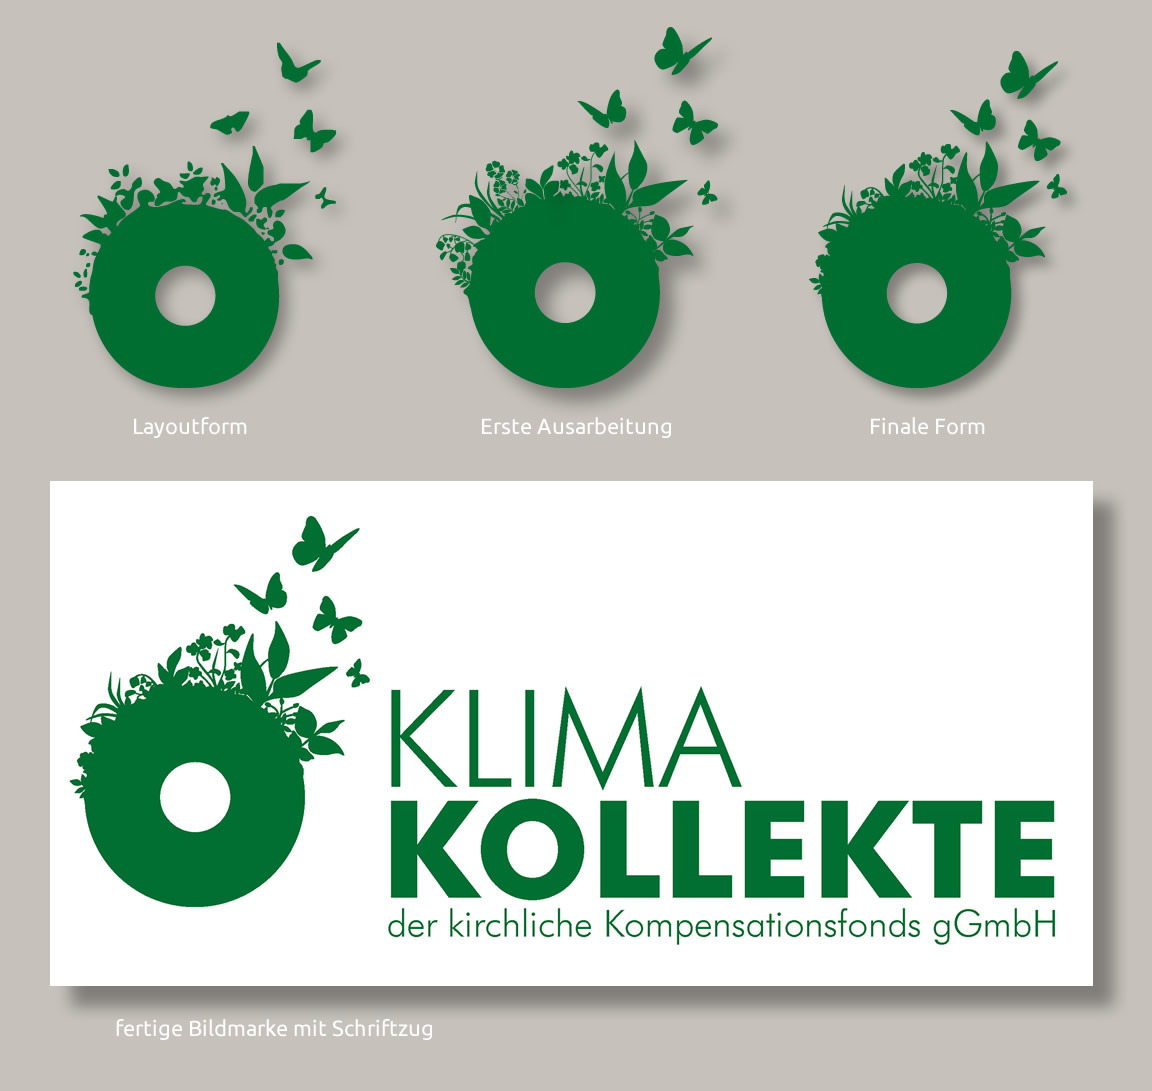 Logoentwicklung, Büro für Grafikdesign und Illustration in Zusammenarbeit mit Ari Gröbke Design